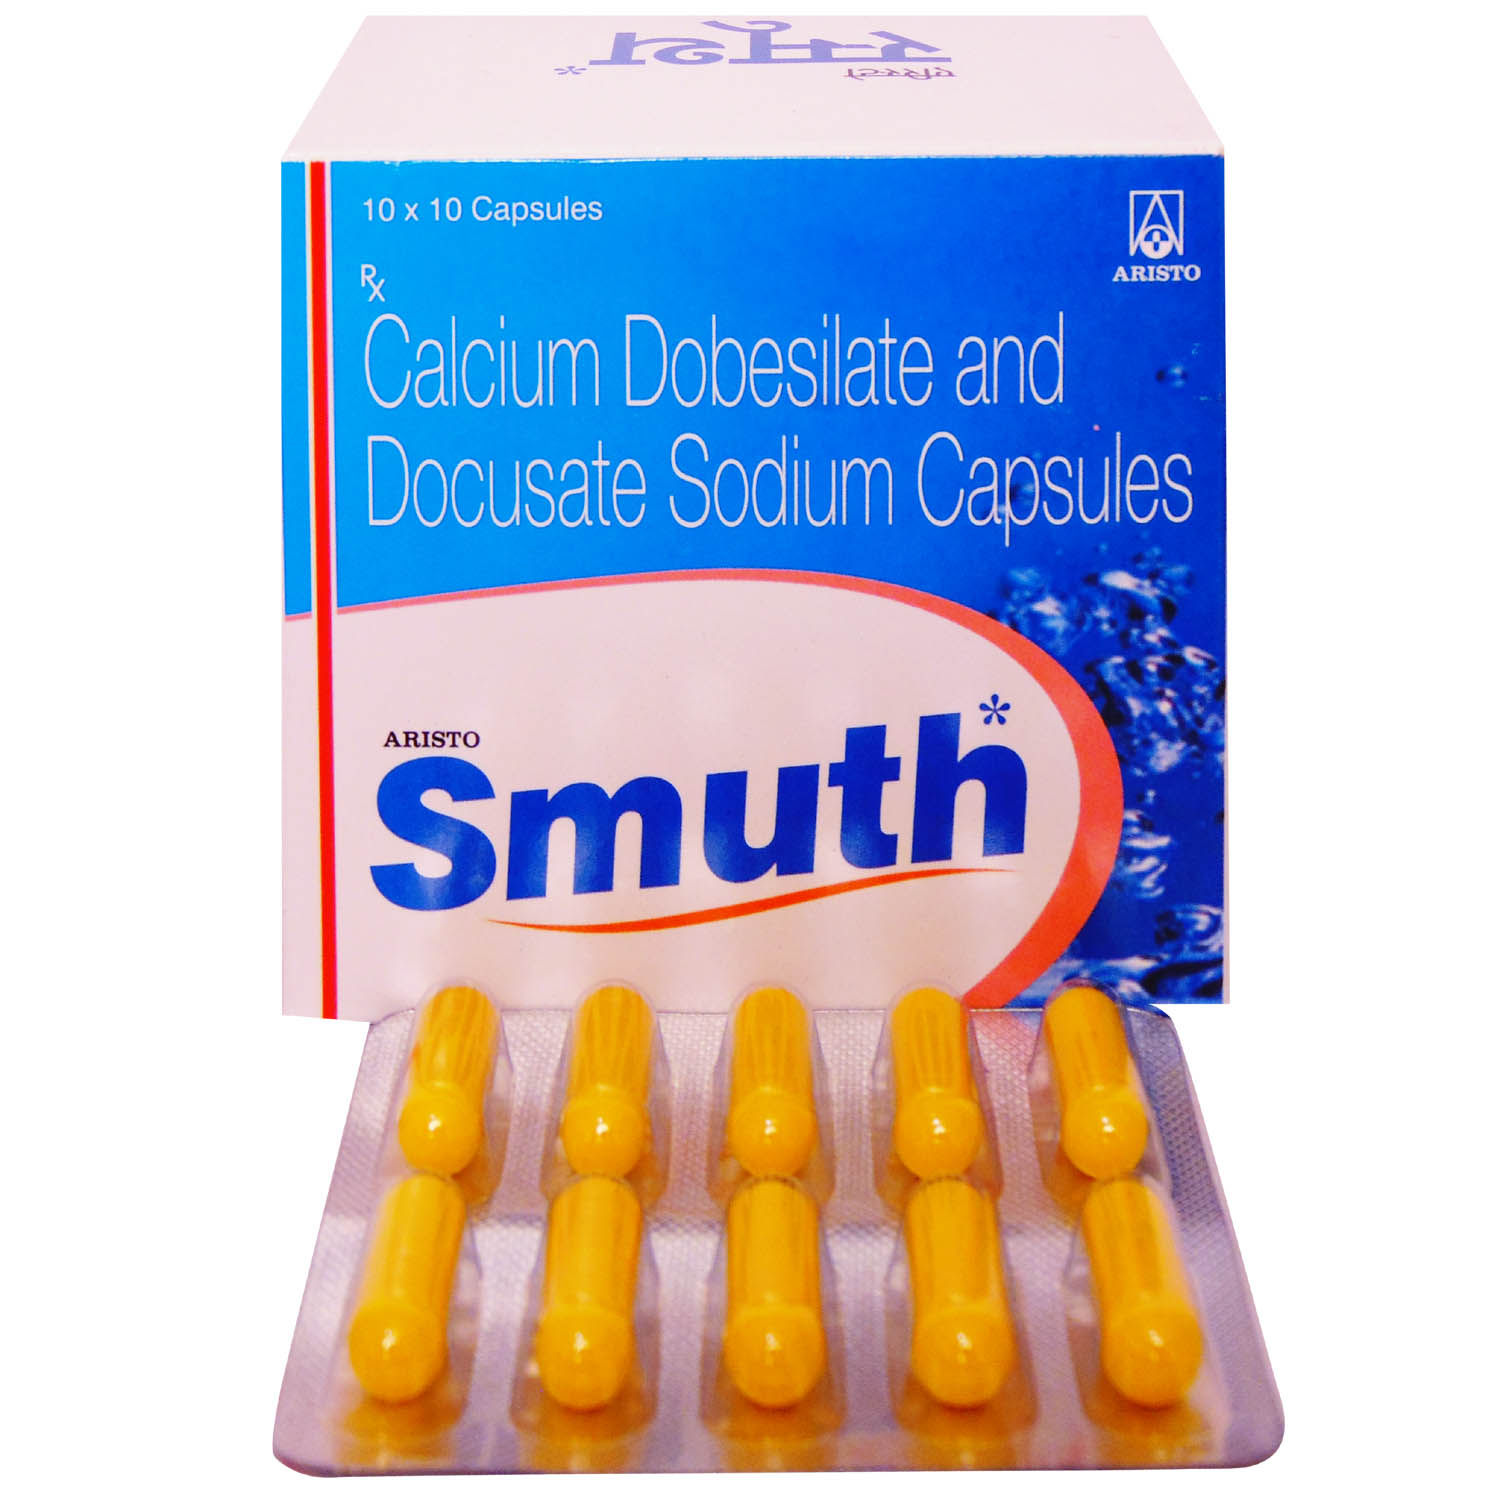 Buy Smuth Capsule 10's Online